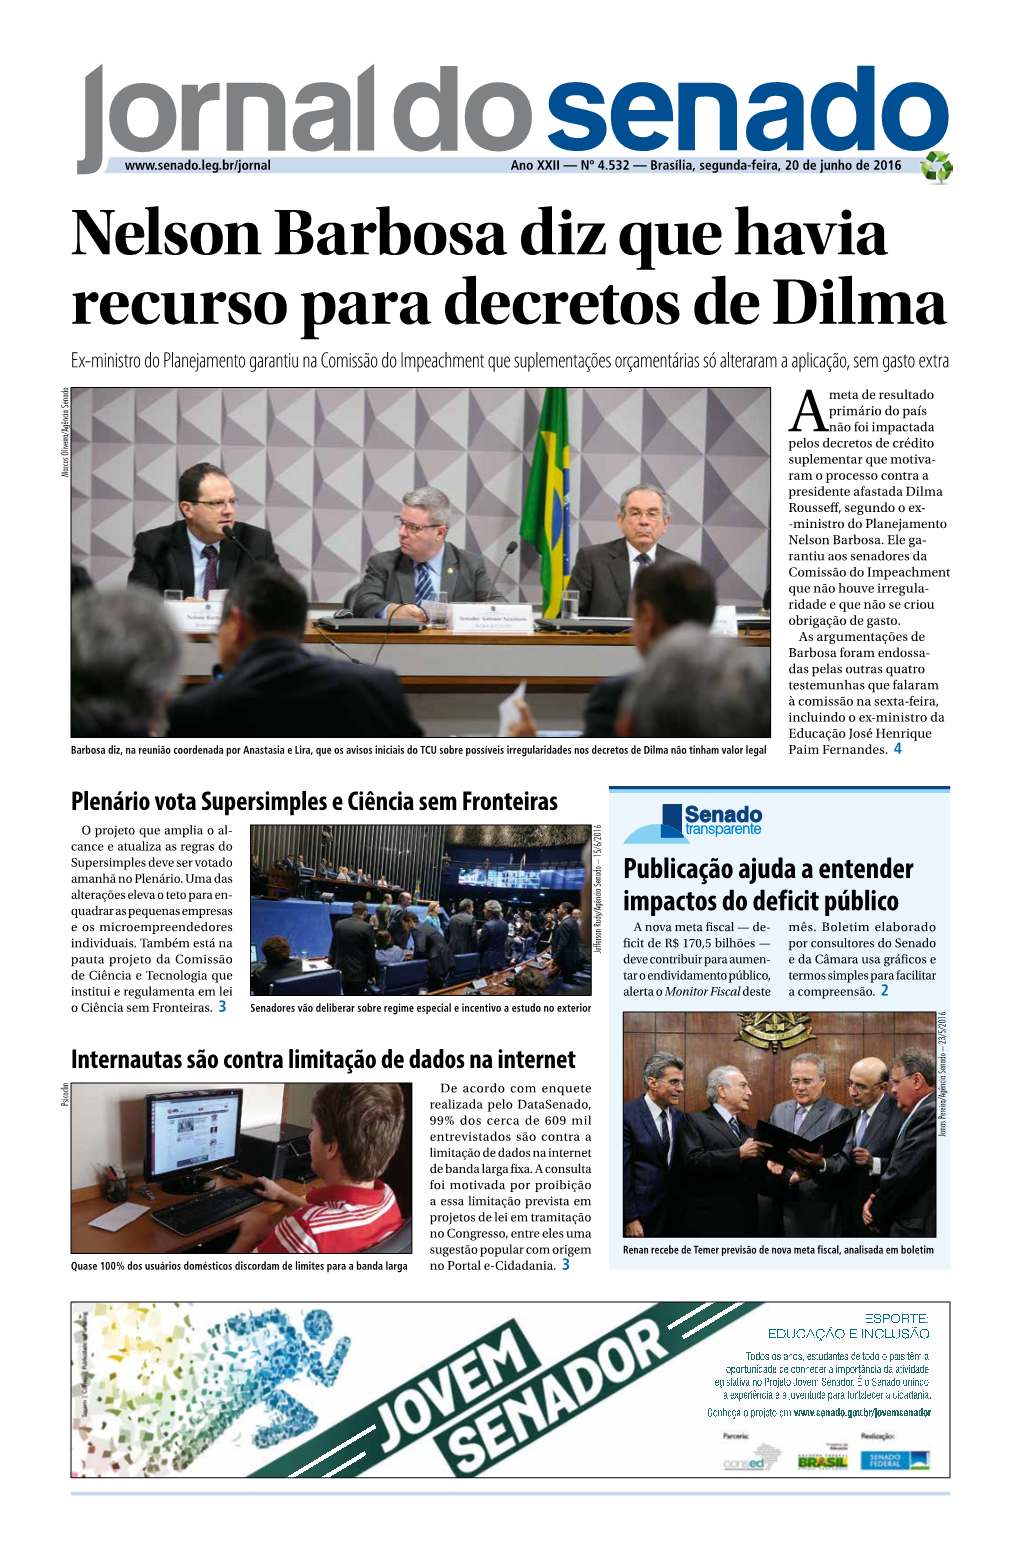 Nelson Barbosa Diz Que Havia Recurso Para Decretos De Dilma